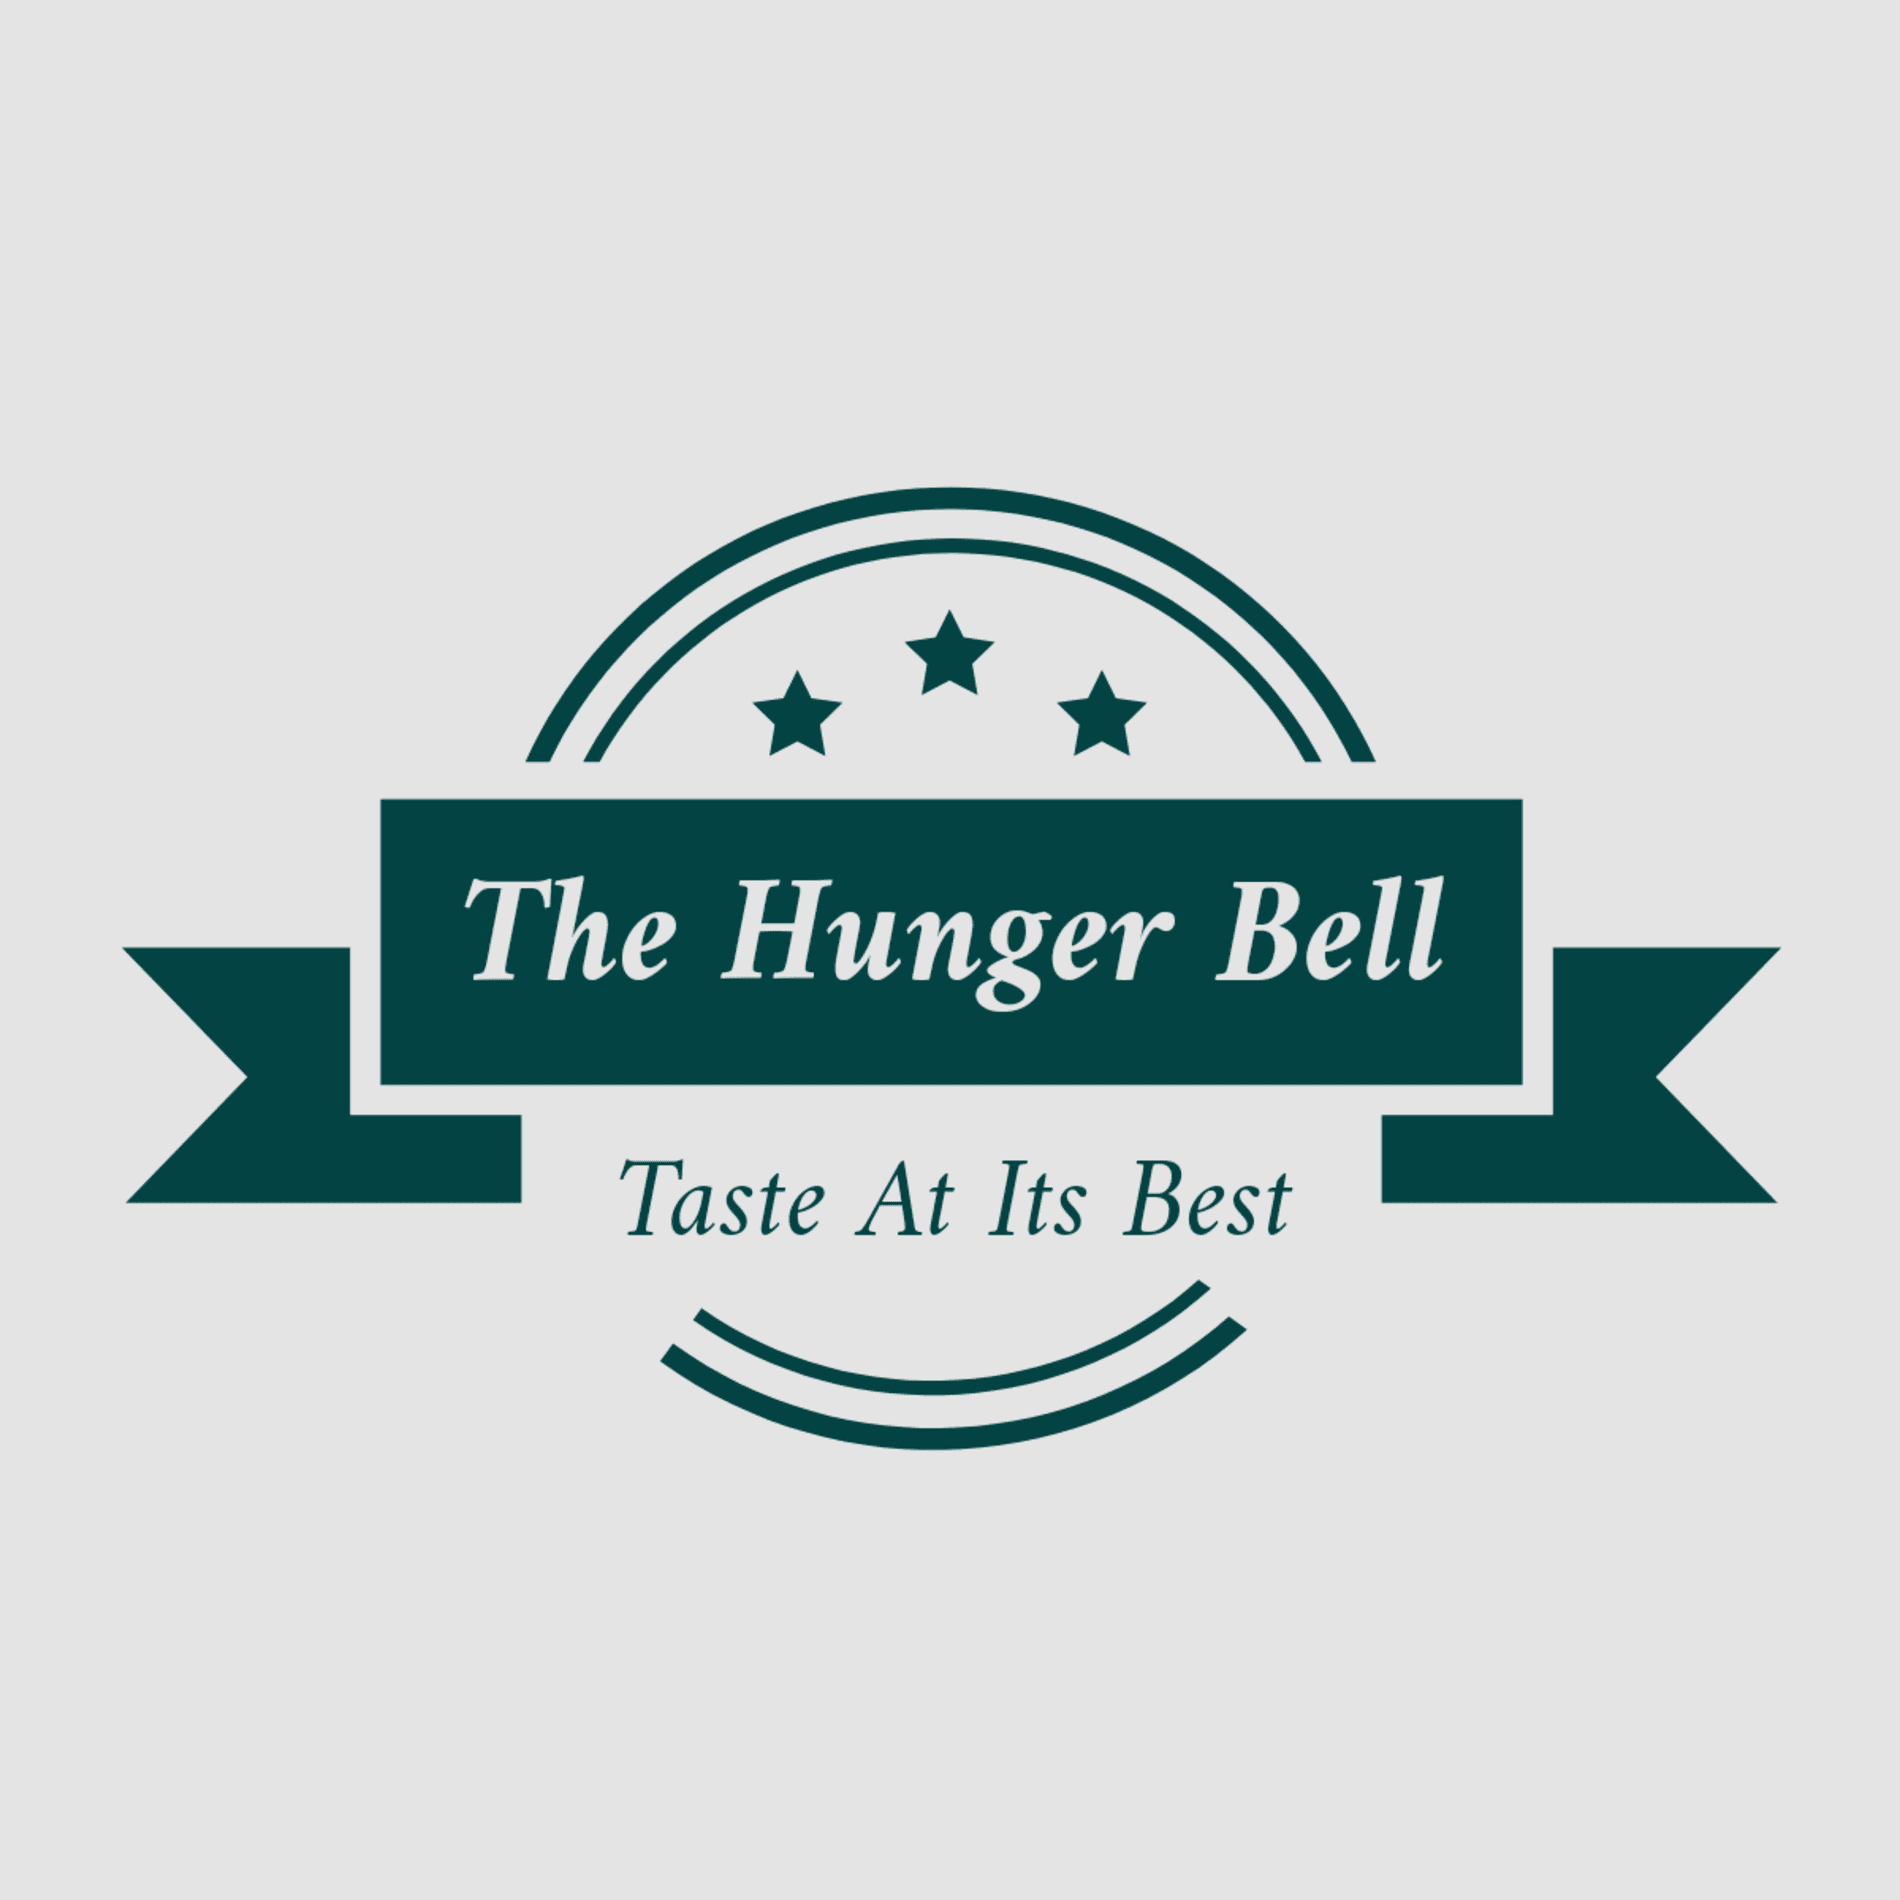 The Hunger Bell